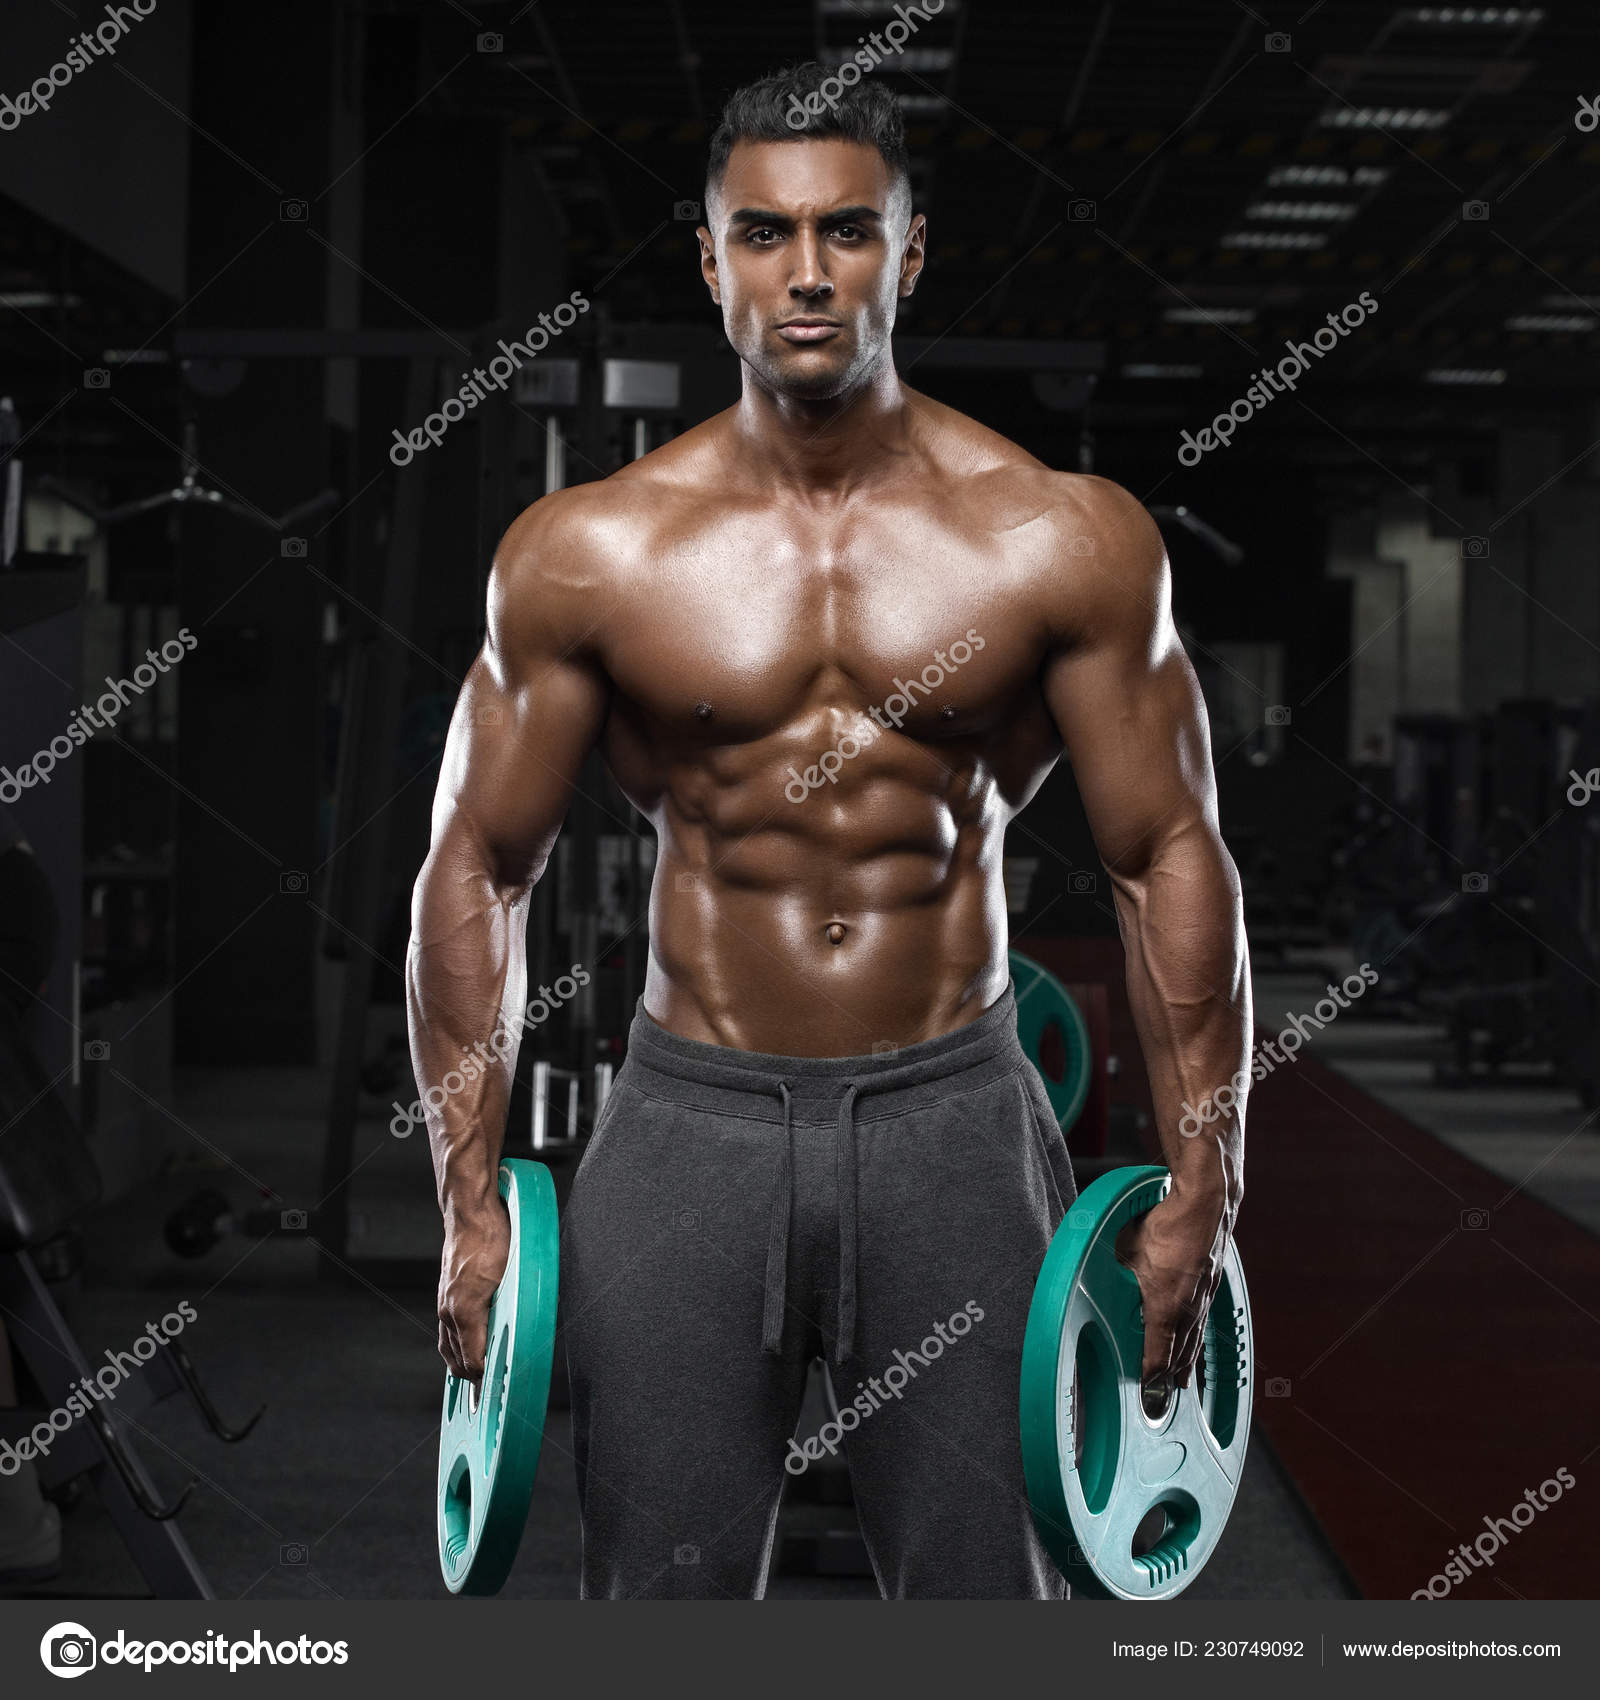 Arab Bodybuilder Workout